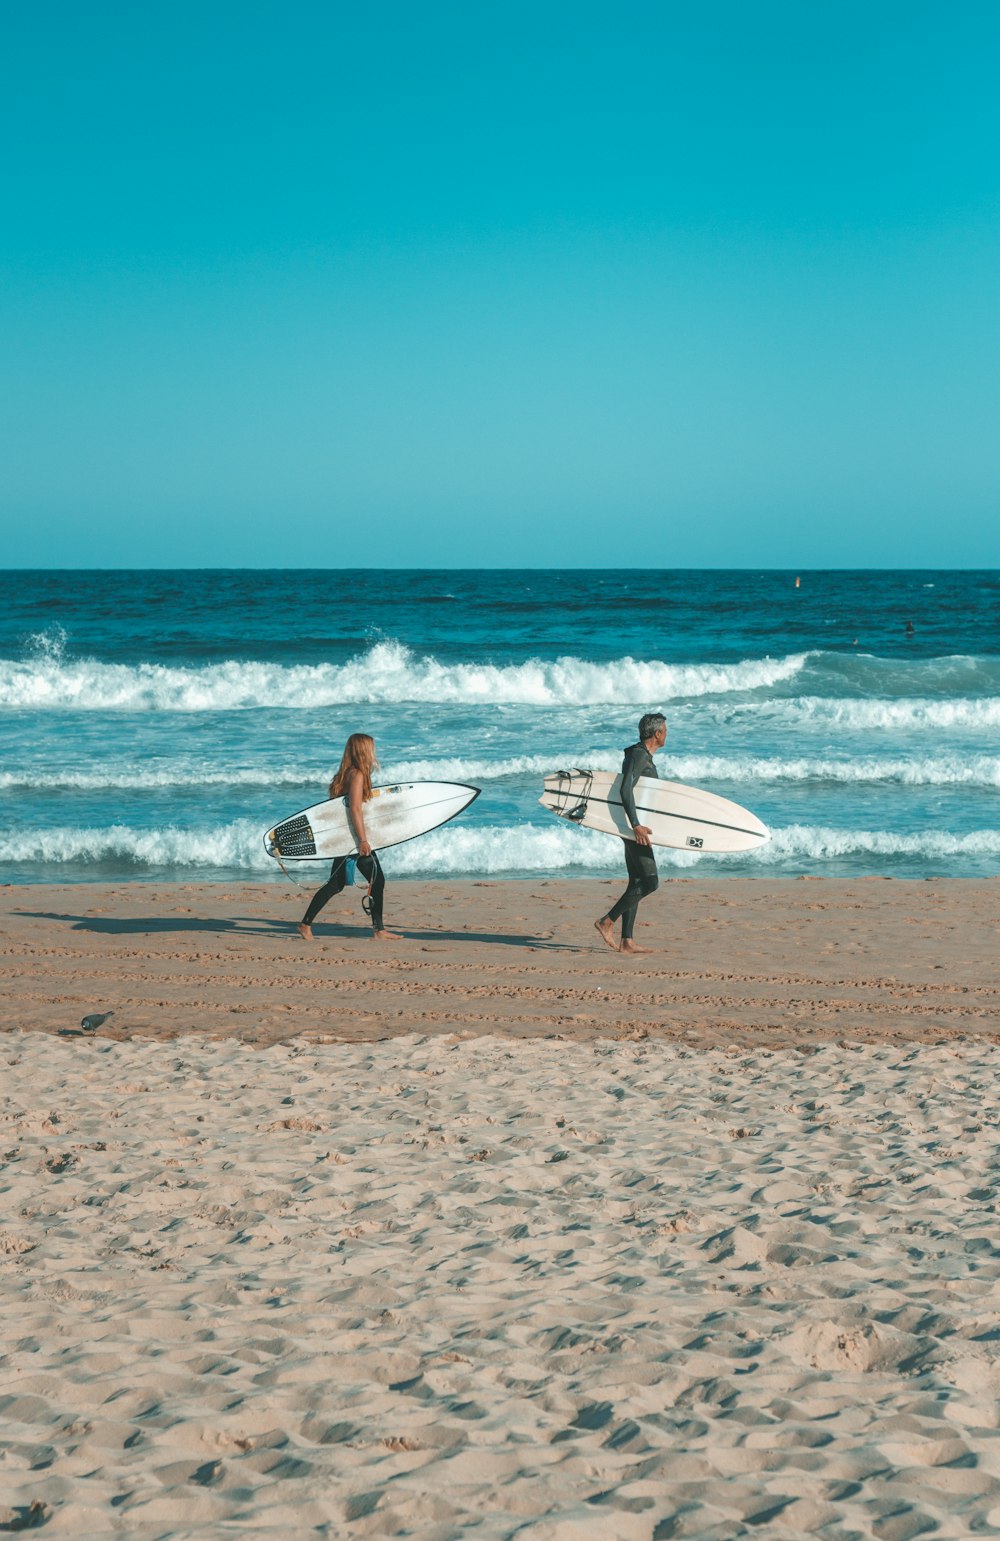 Deux personnes marchant sur la plage avec des planches de surf